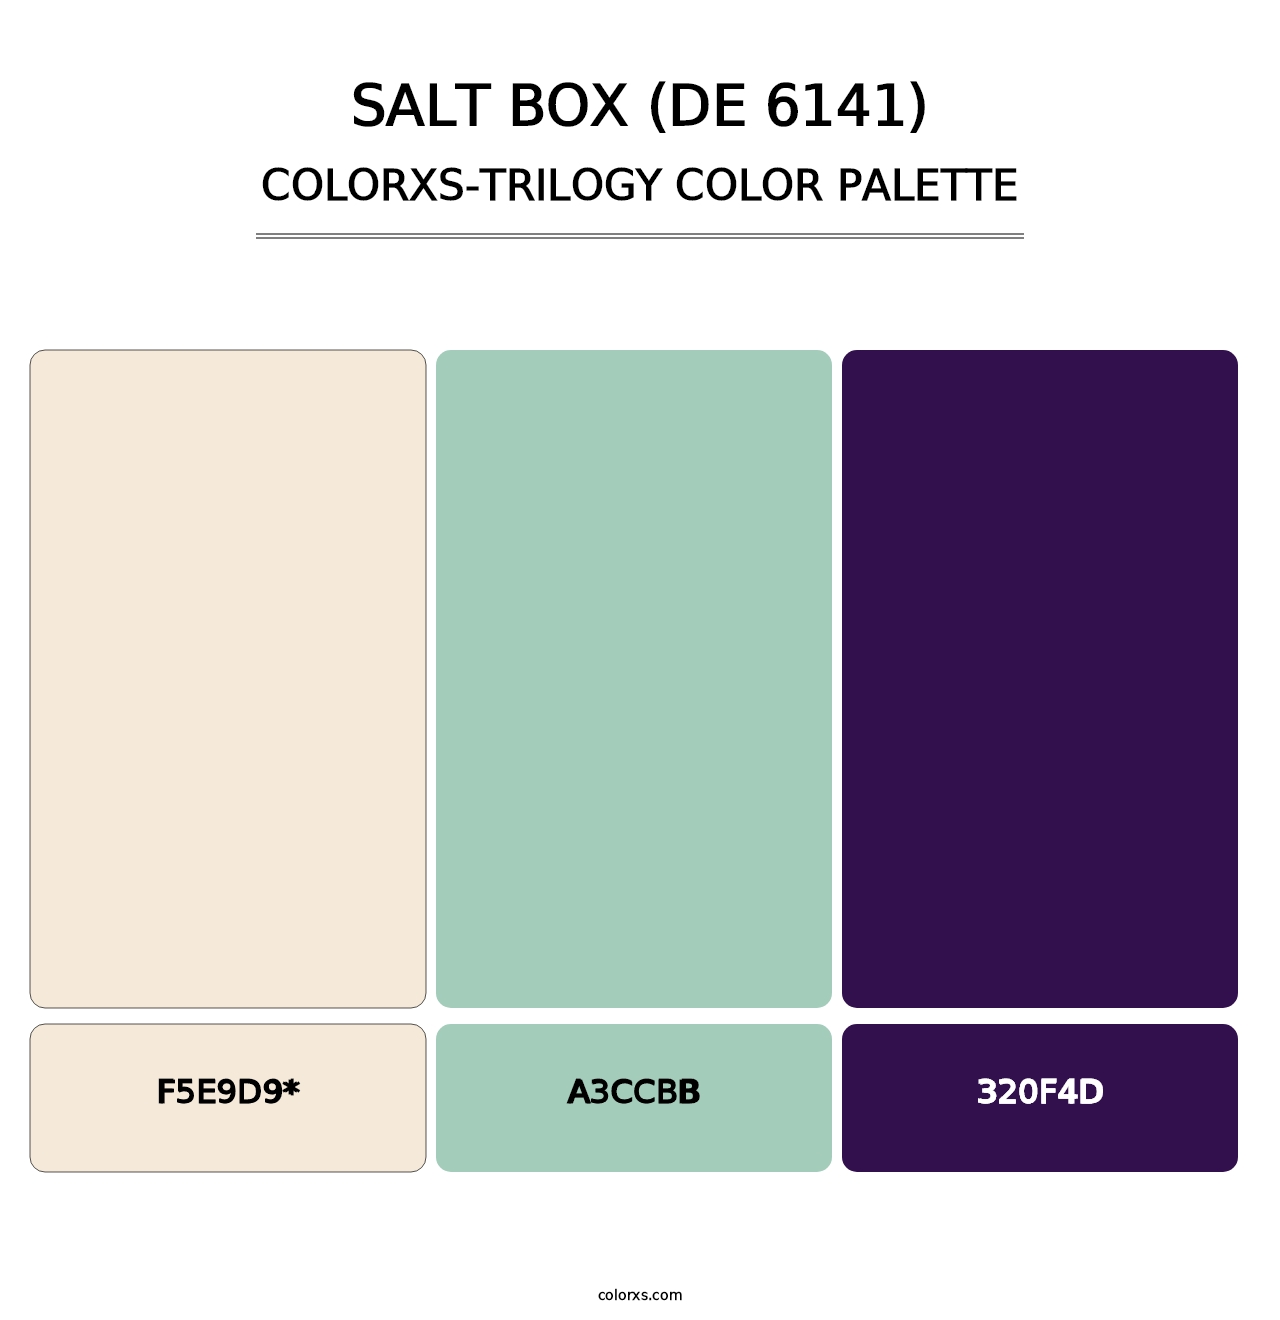 Salt Box (DE 6141) - Colorxs Trilogy Palette